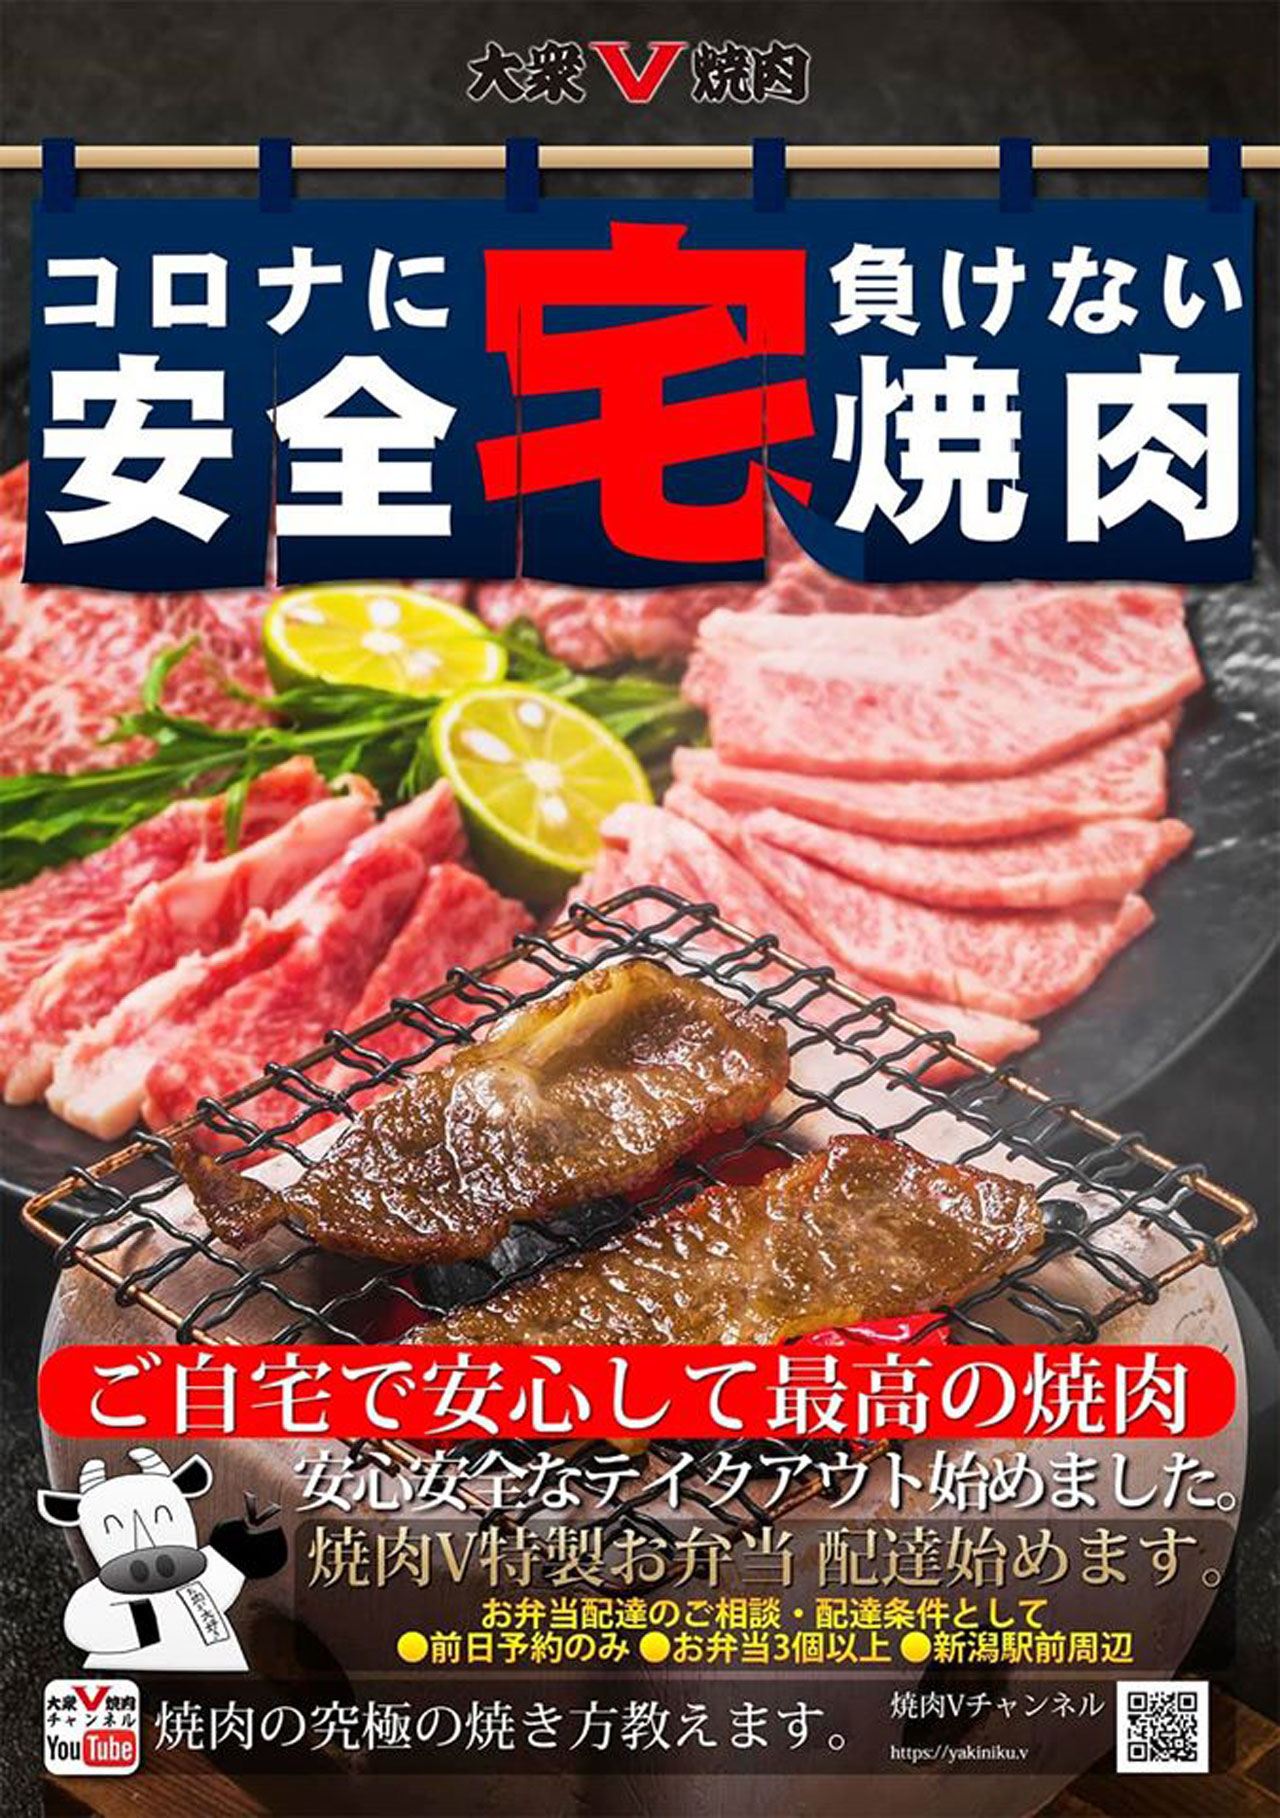 自宅で人気焼肉店の味が楽しめる 大衆焼肉v 焼肉セットのテイクアウトを開始 Shikamo シカモ